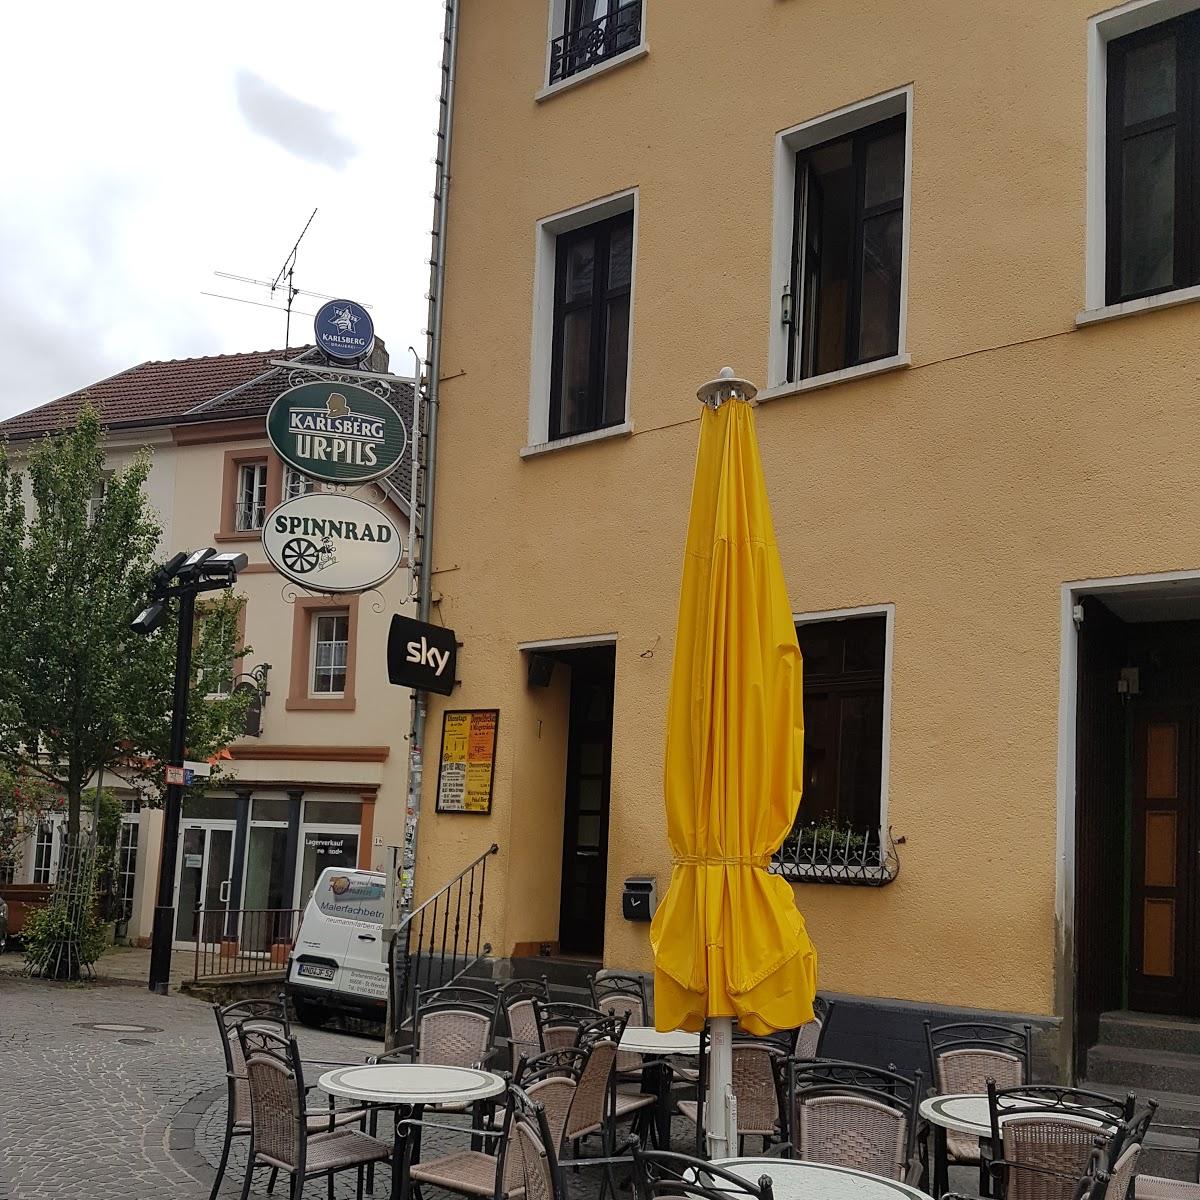 Restaurant "Musikkneipe Spinnrad" in Sankt Wendel